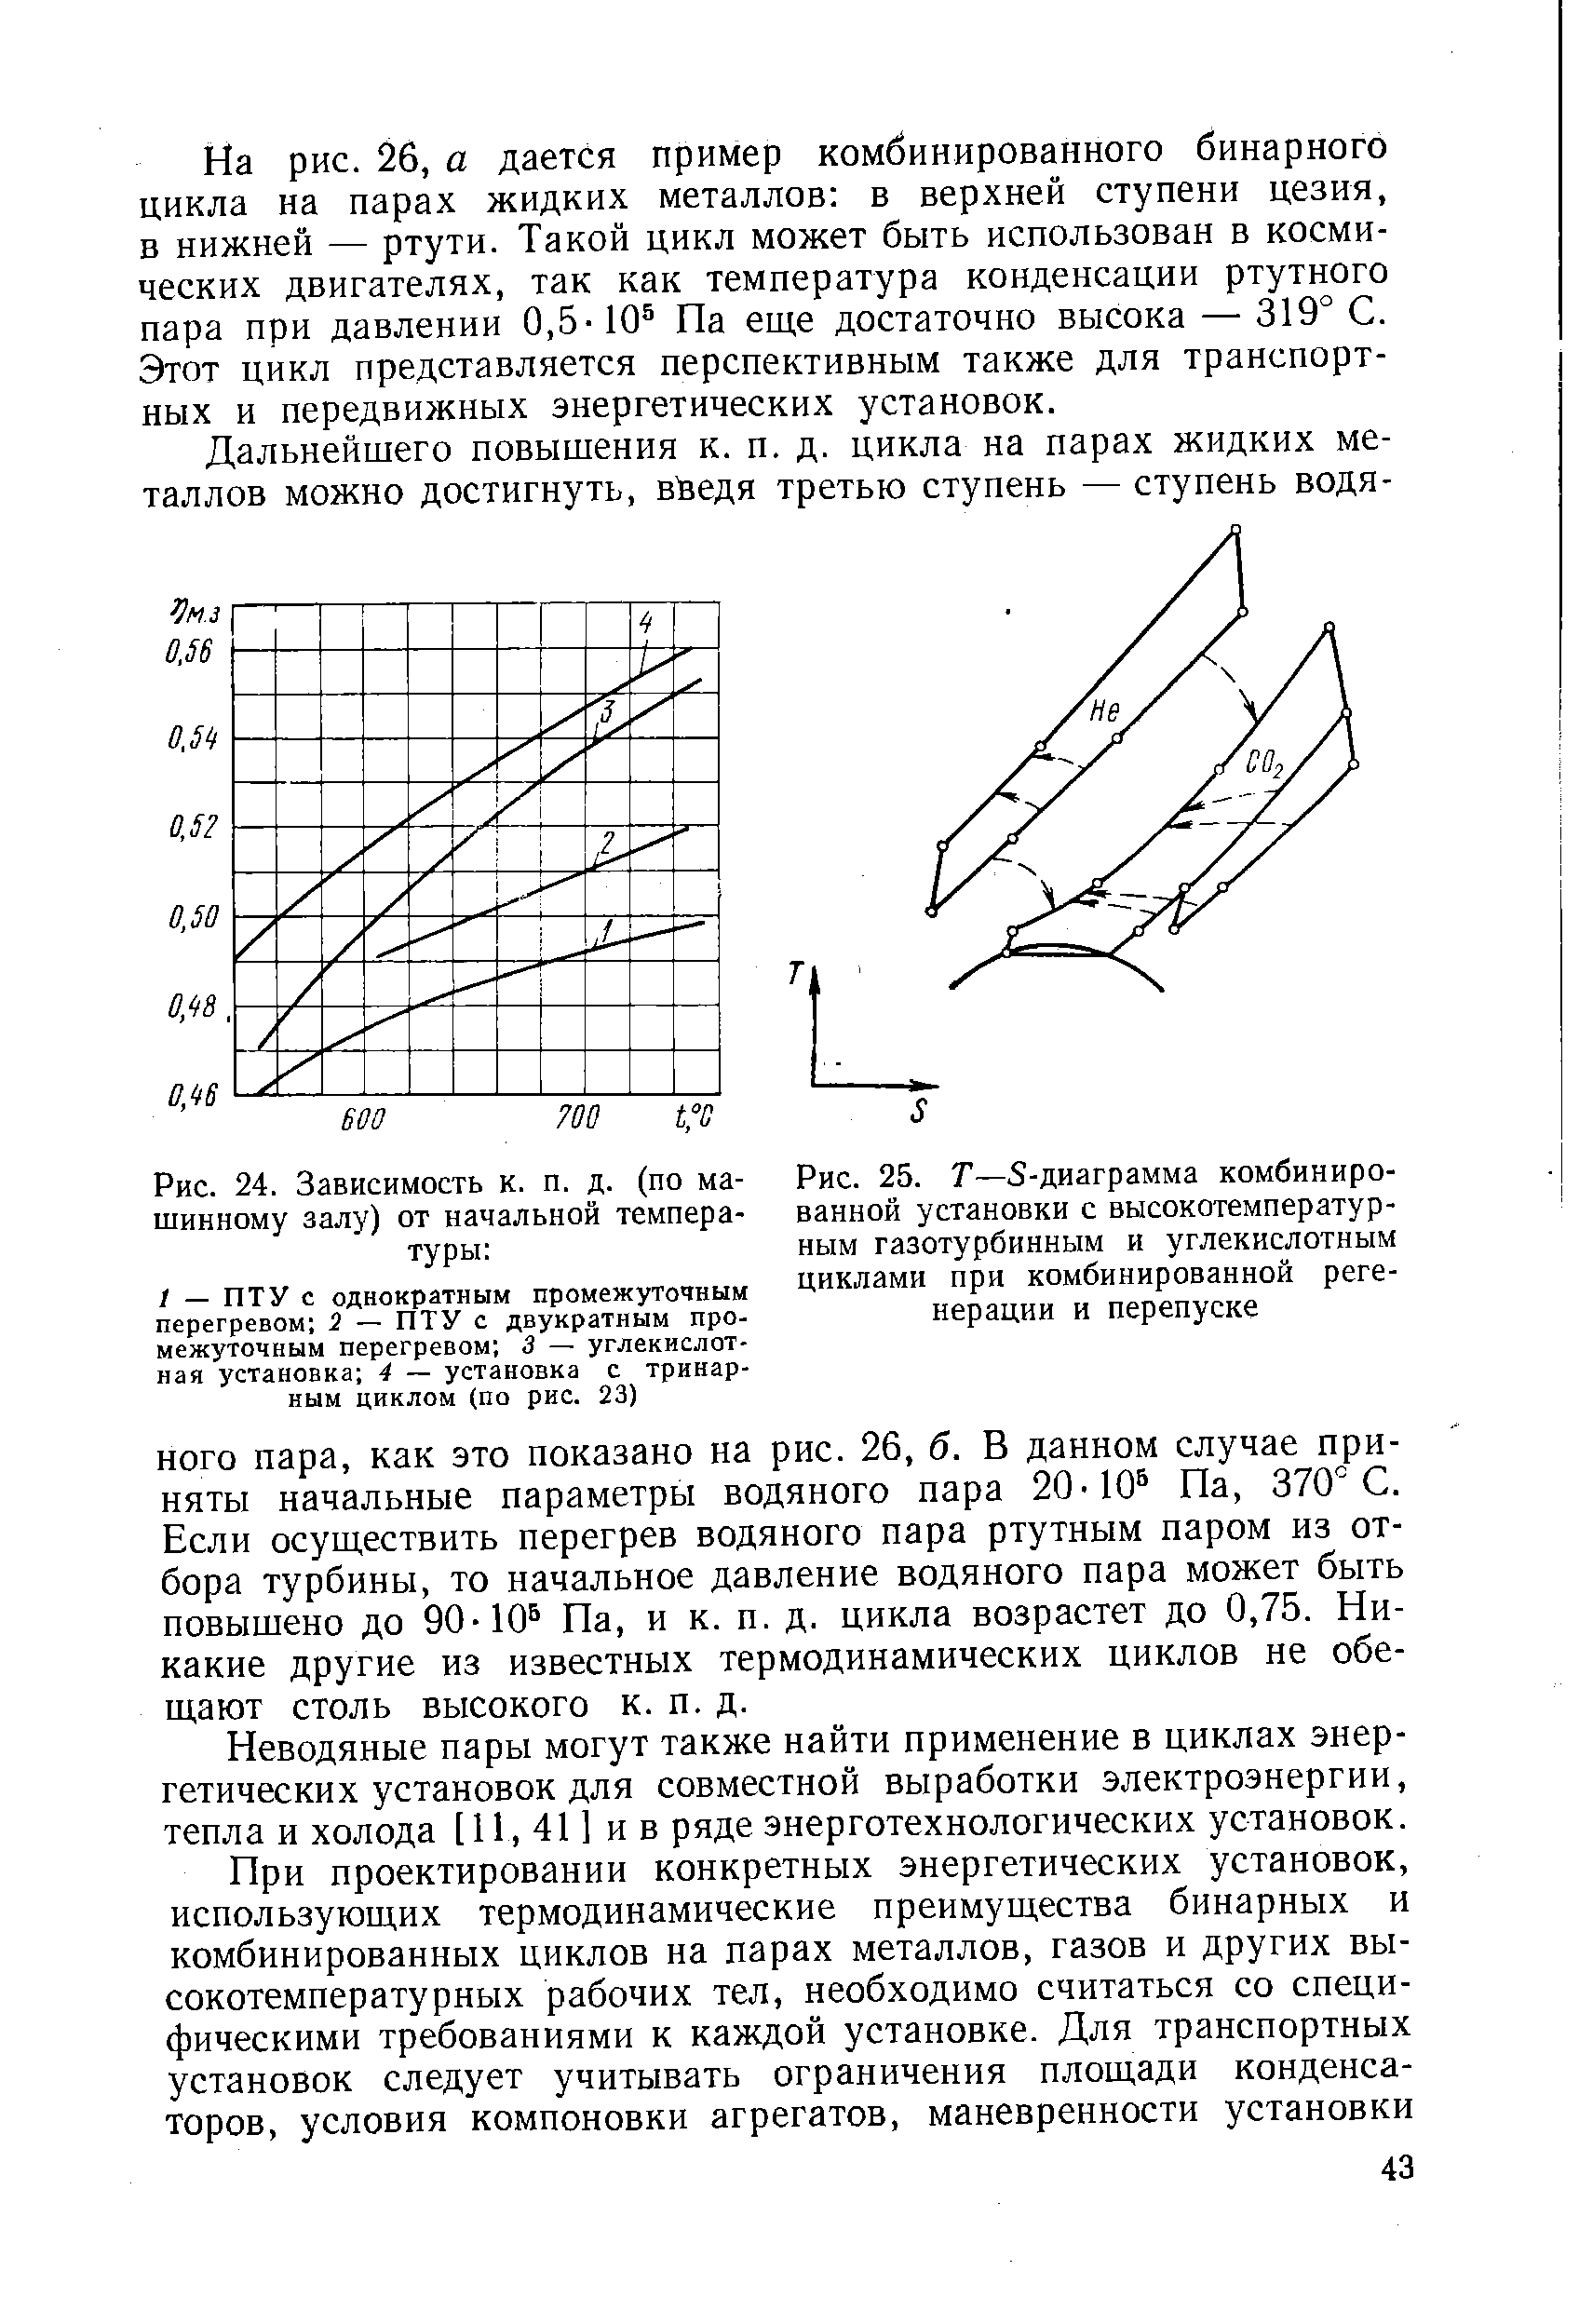 Рис. 25. Т—S-диаграмма <a href="/info/94448">комбинированной установки</a> с высокотемпературным газотурбинным и углекислотным циклами при комбинированной регенерации и перепуске
